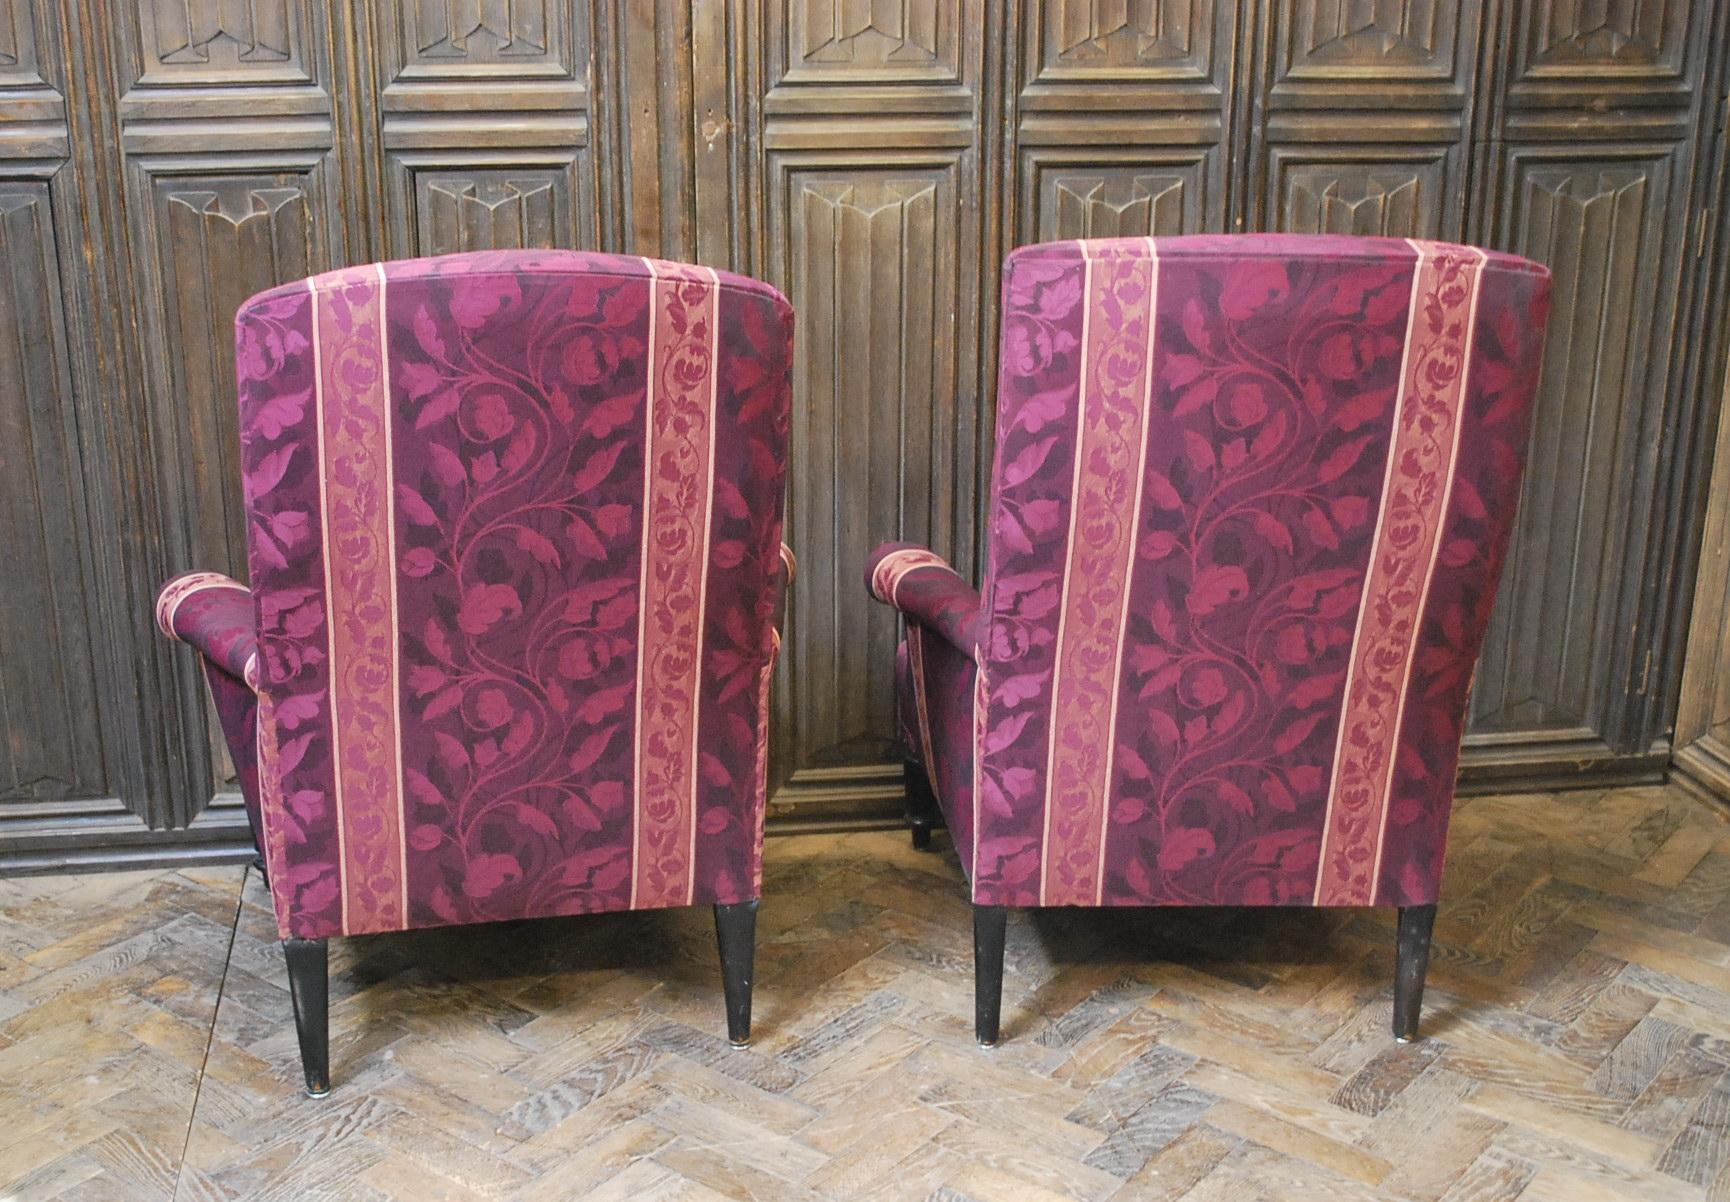 Hutton-Clarke Antiques a le plaisir de présenter une splendide paire de fauteuils Napoléon III, fabriqués vers 1860. Ces chaises exquises sont revêtues avec goût d'un tissu violet d'une teinte royale, qui complète admirablement leur